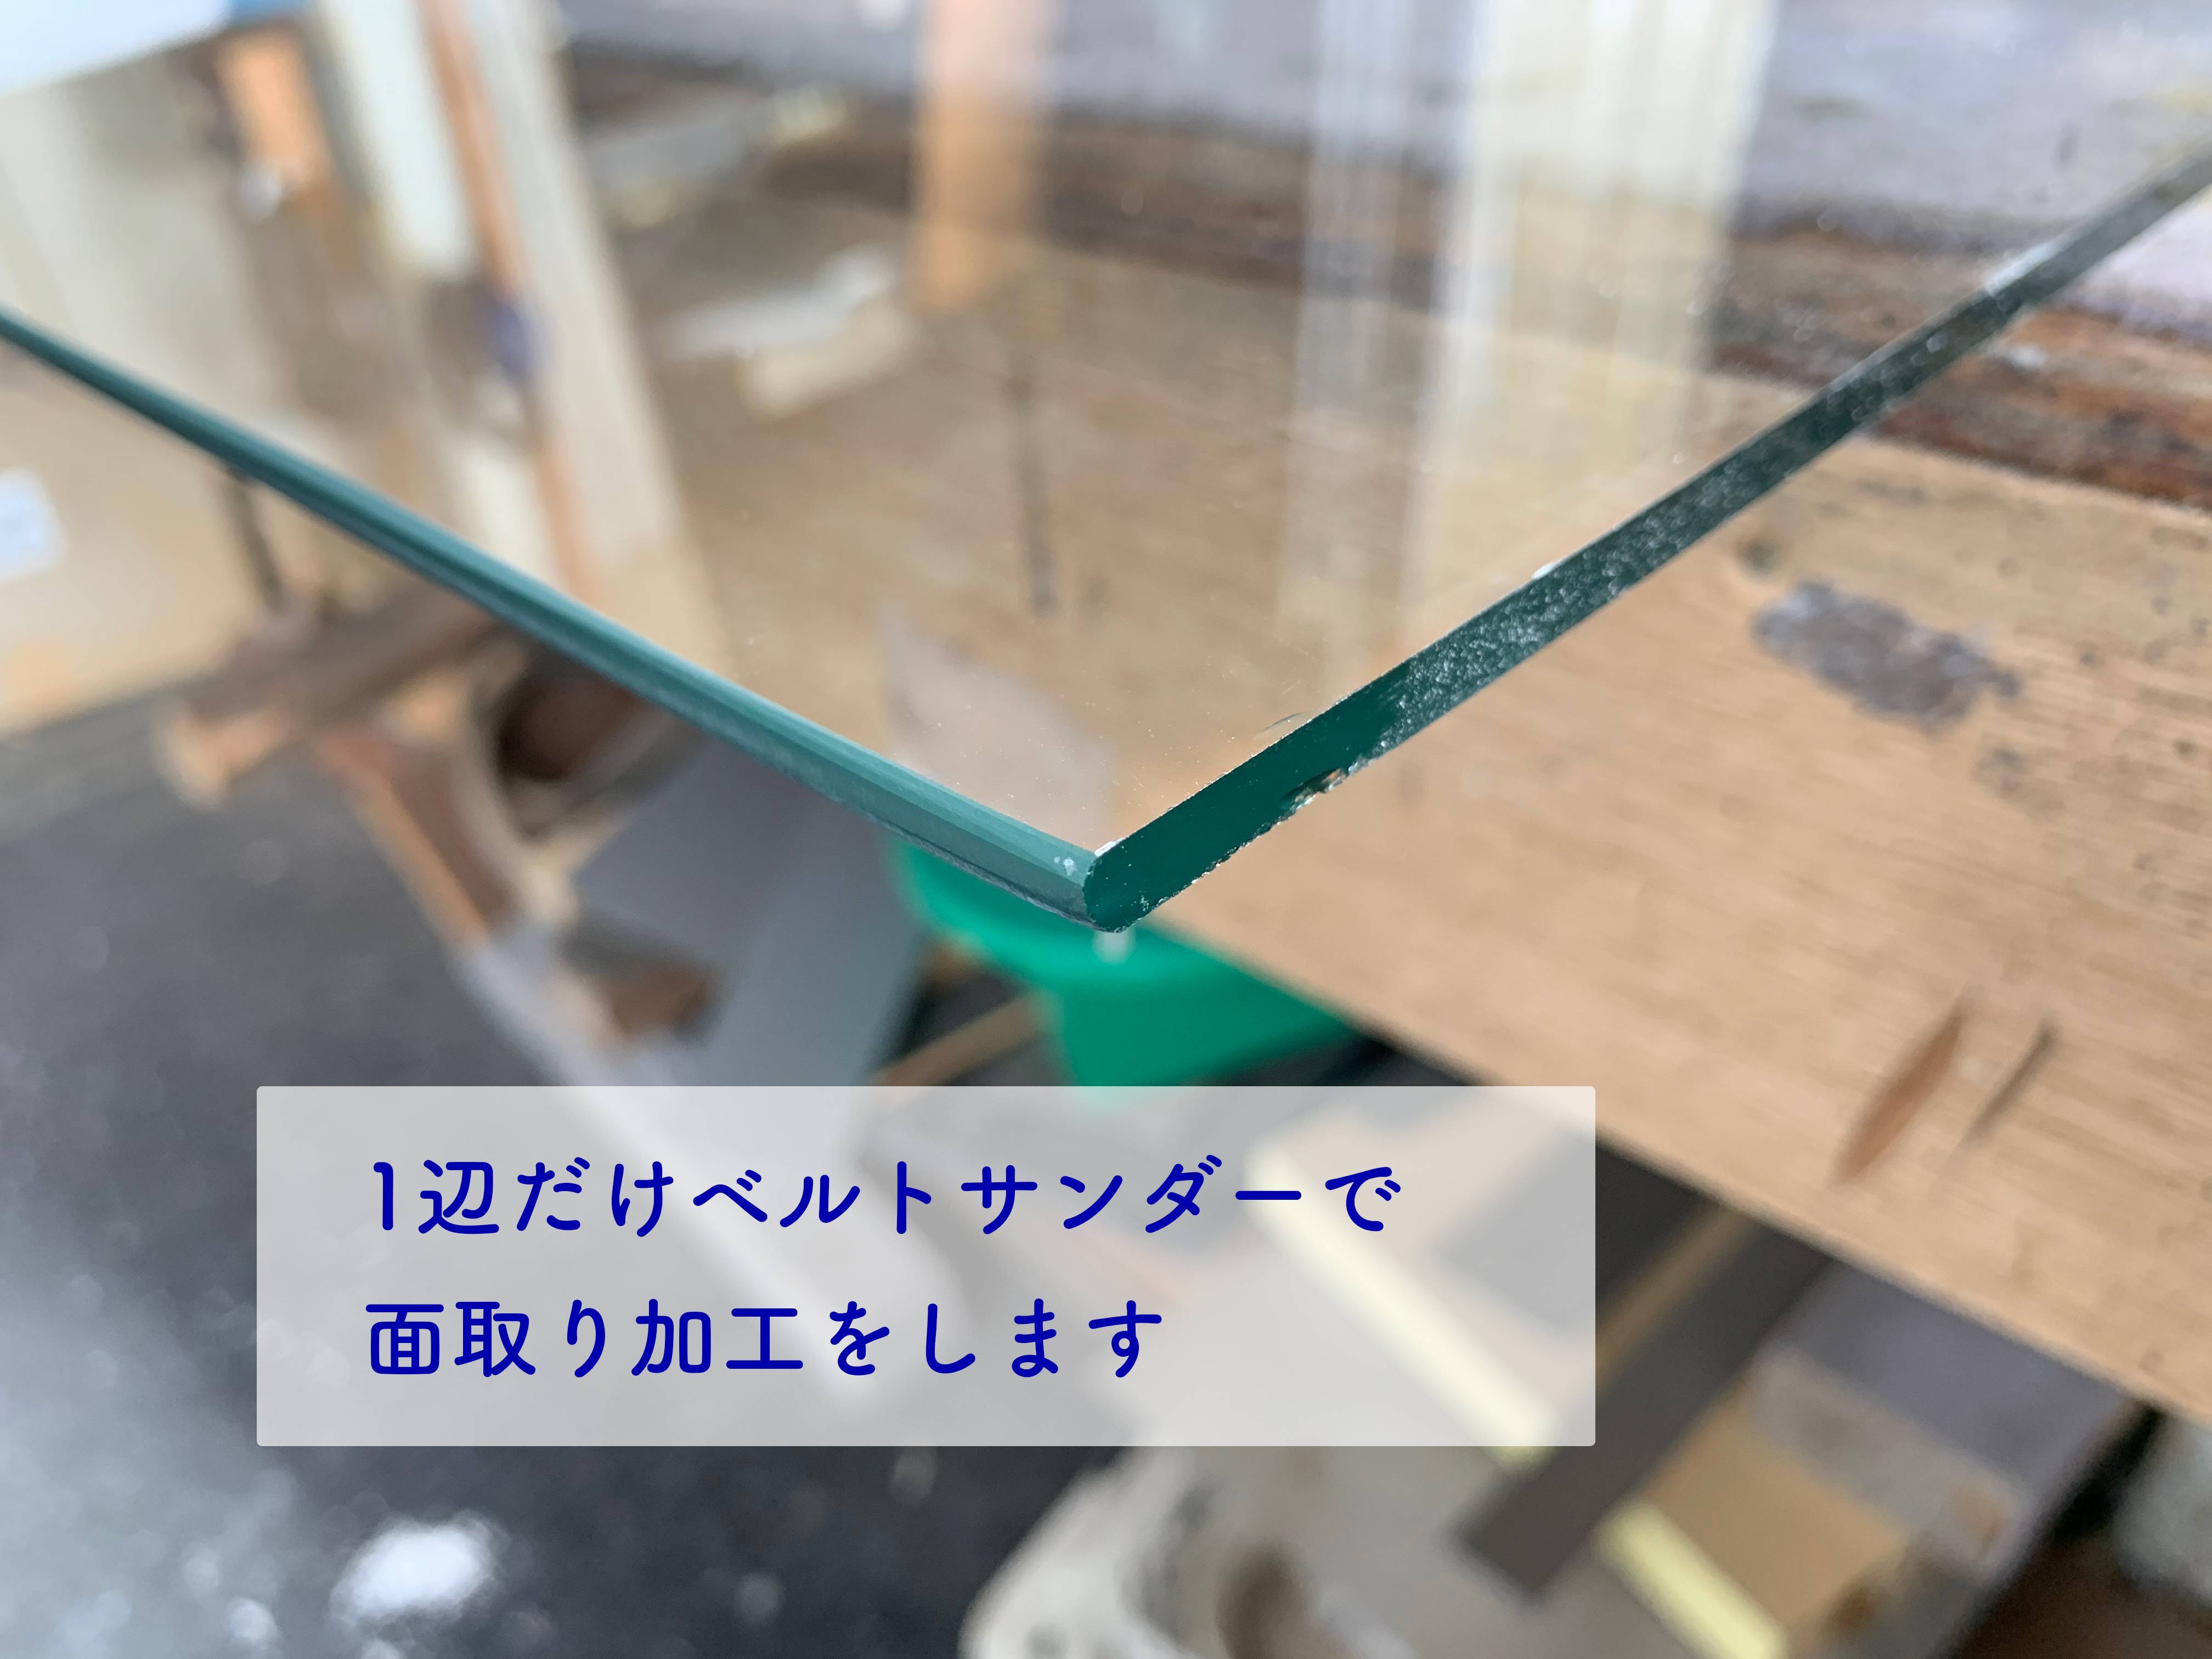 コーナー出窓のガラス修理 タンノサッシのブログ 写真2